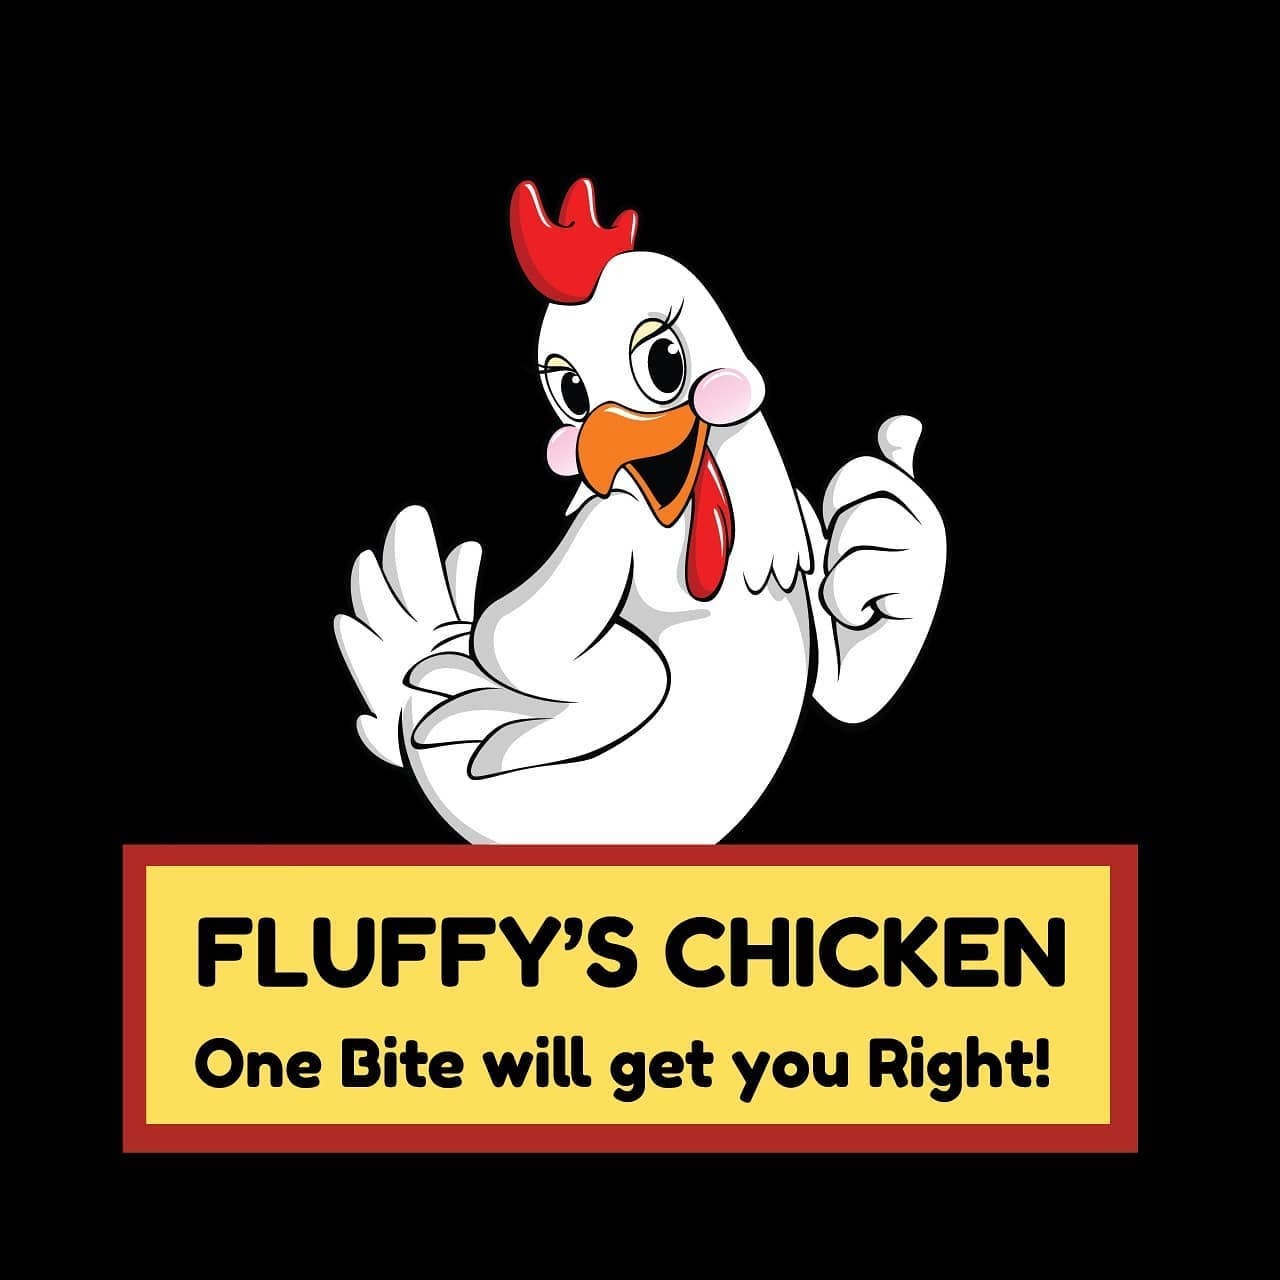 Fluffy’s Chicken